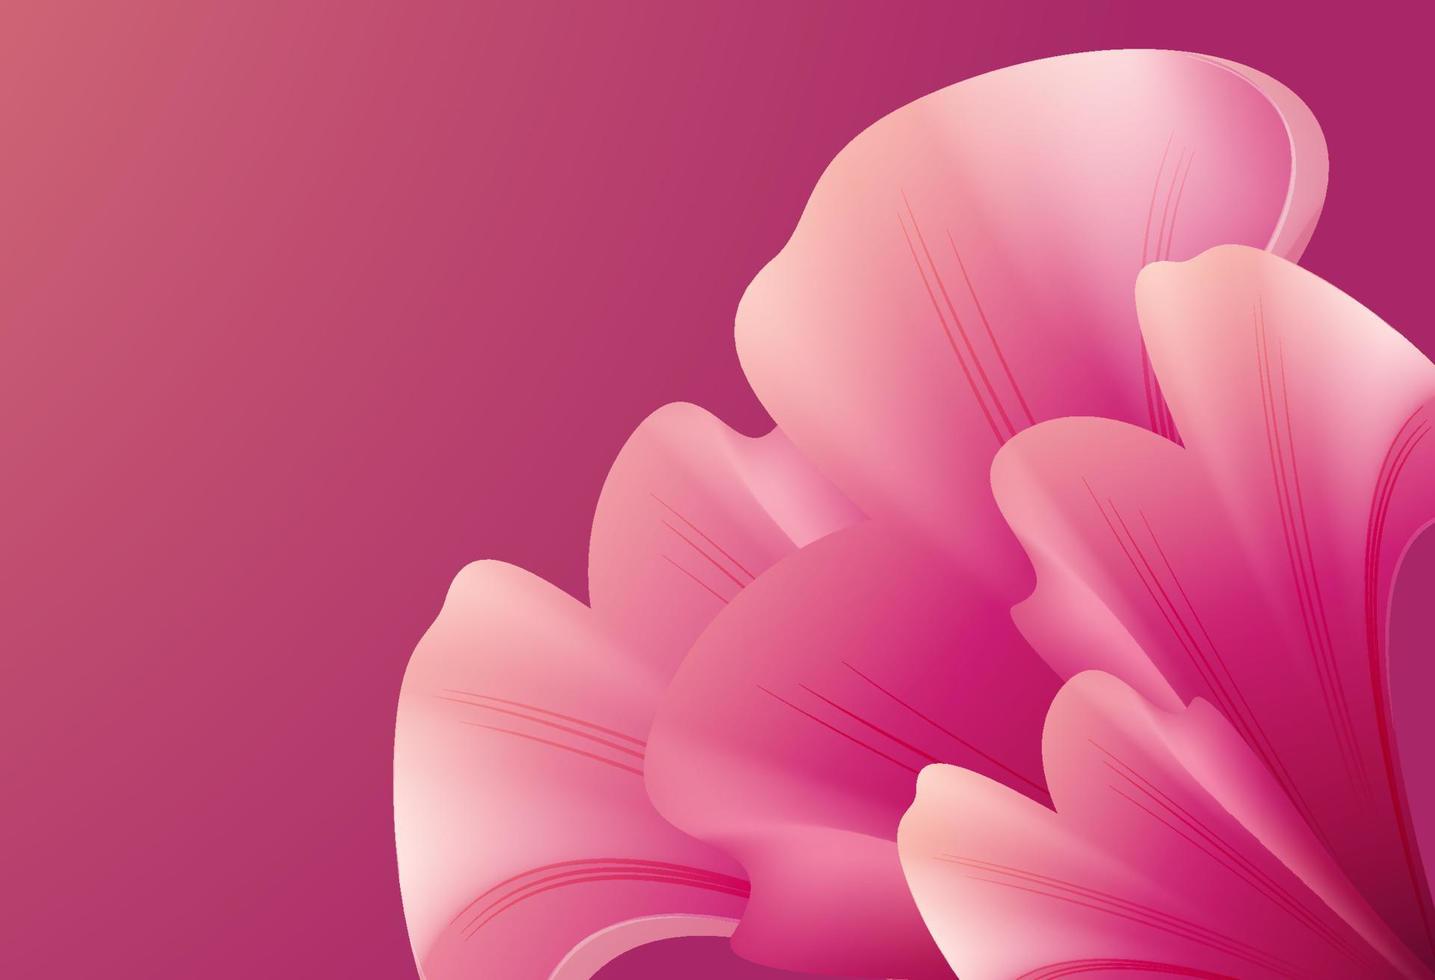 roze bloemvormen op een roze achtergrond. 3D-trendy moderne achtergrond. roze bloem abstracte vorm vector